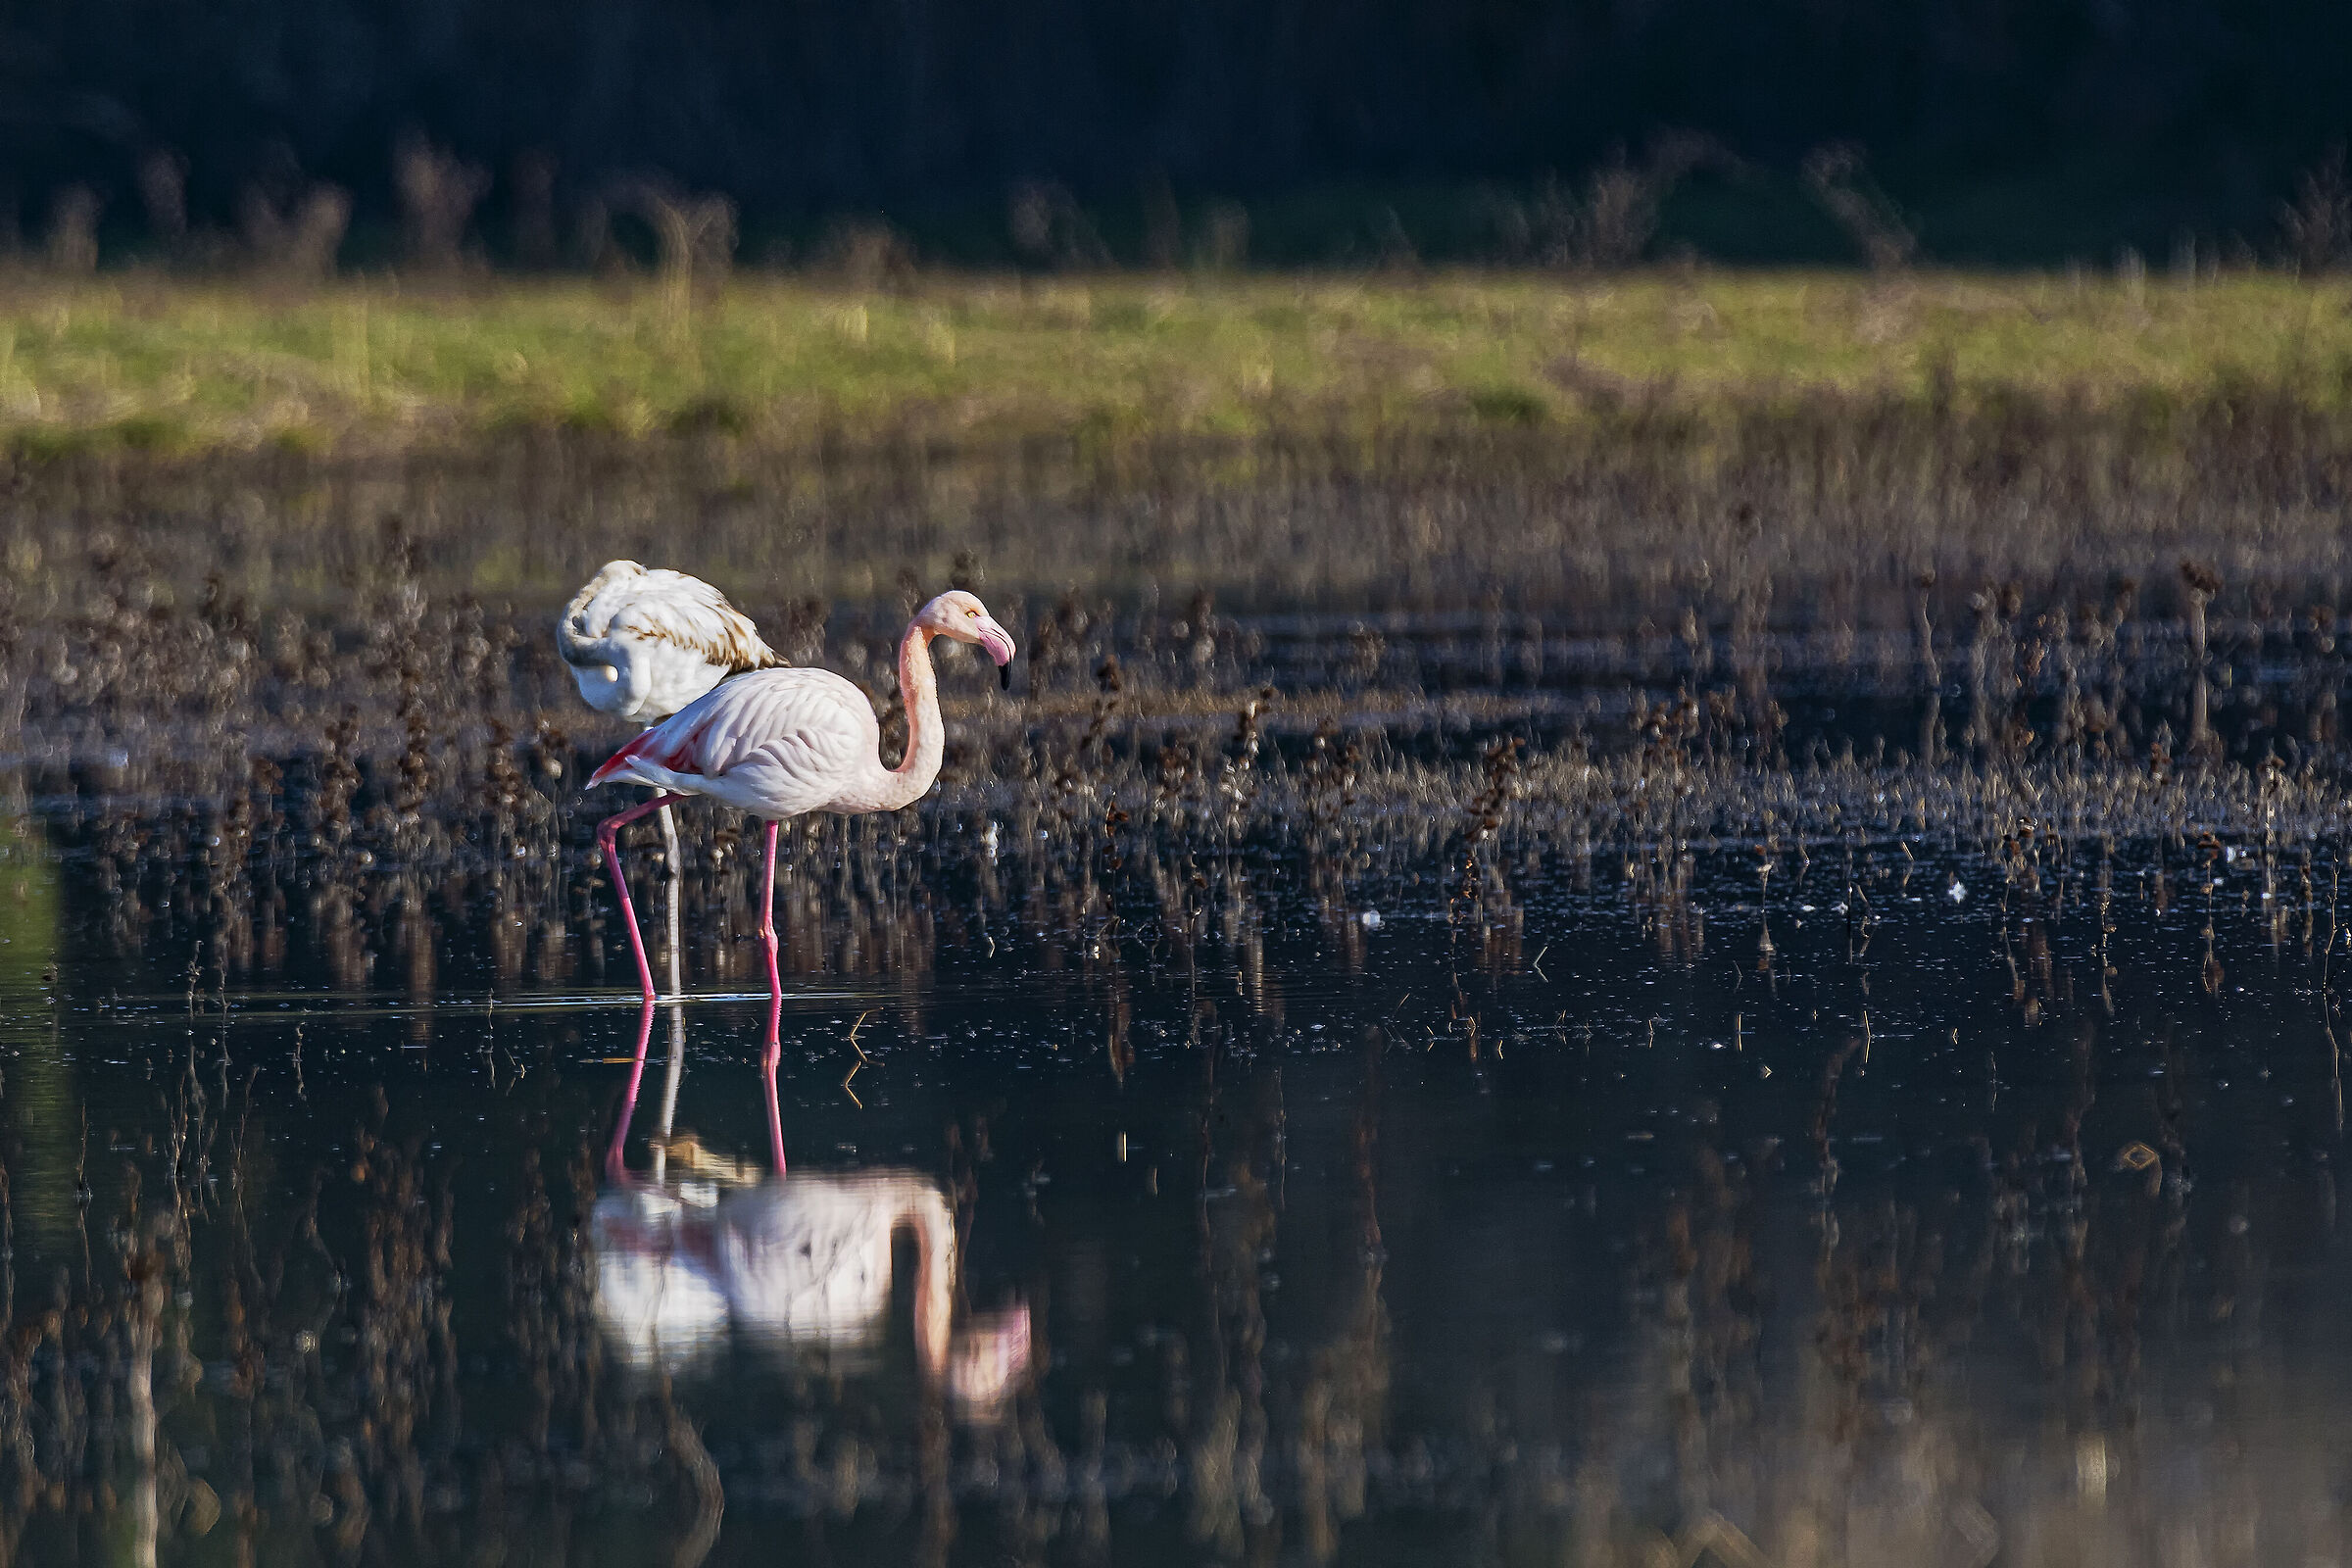 The Flamingo...